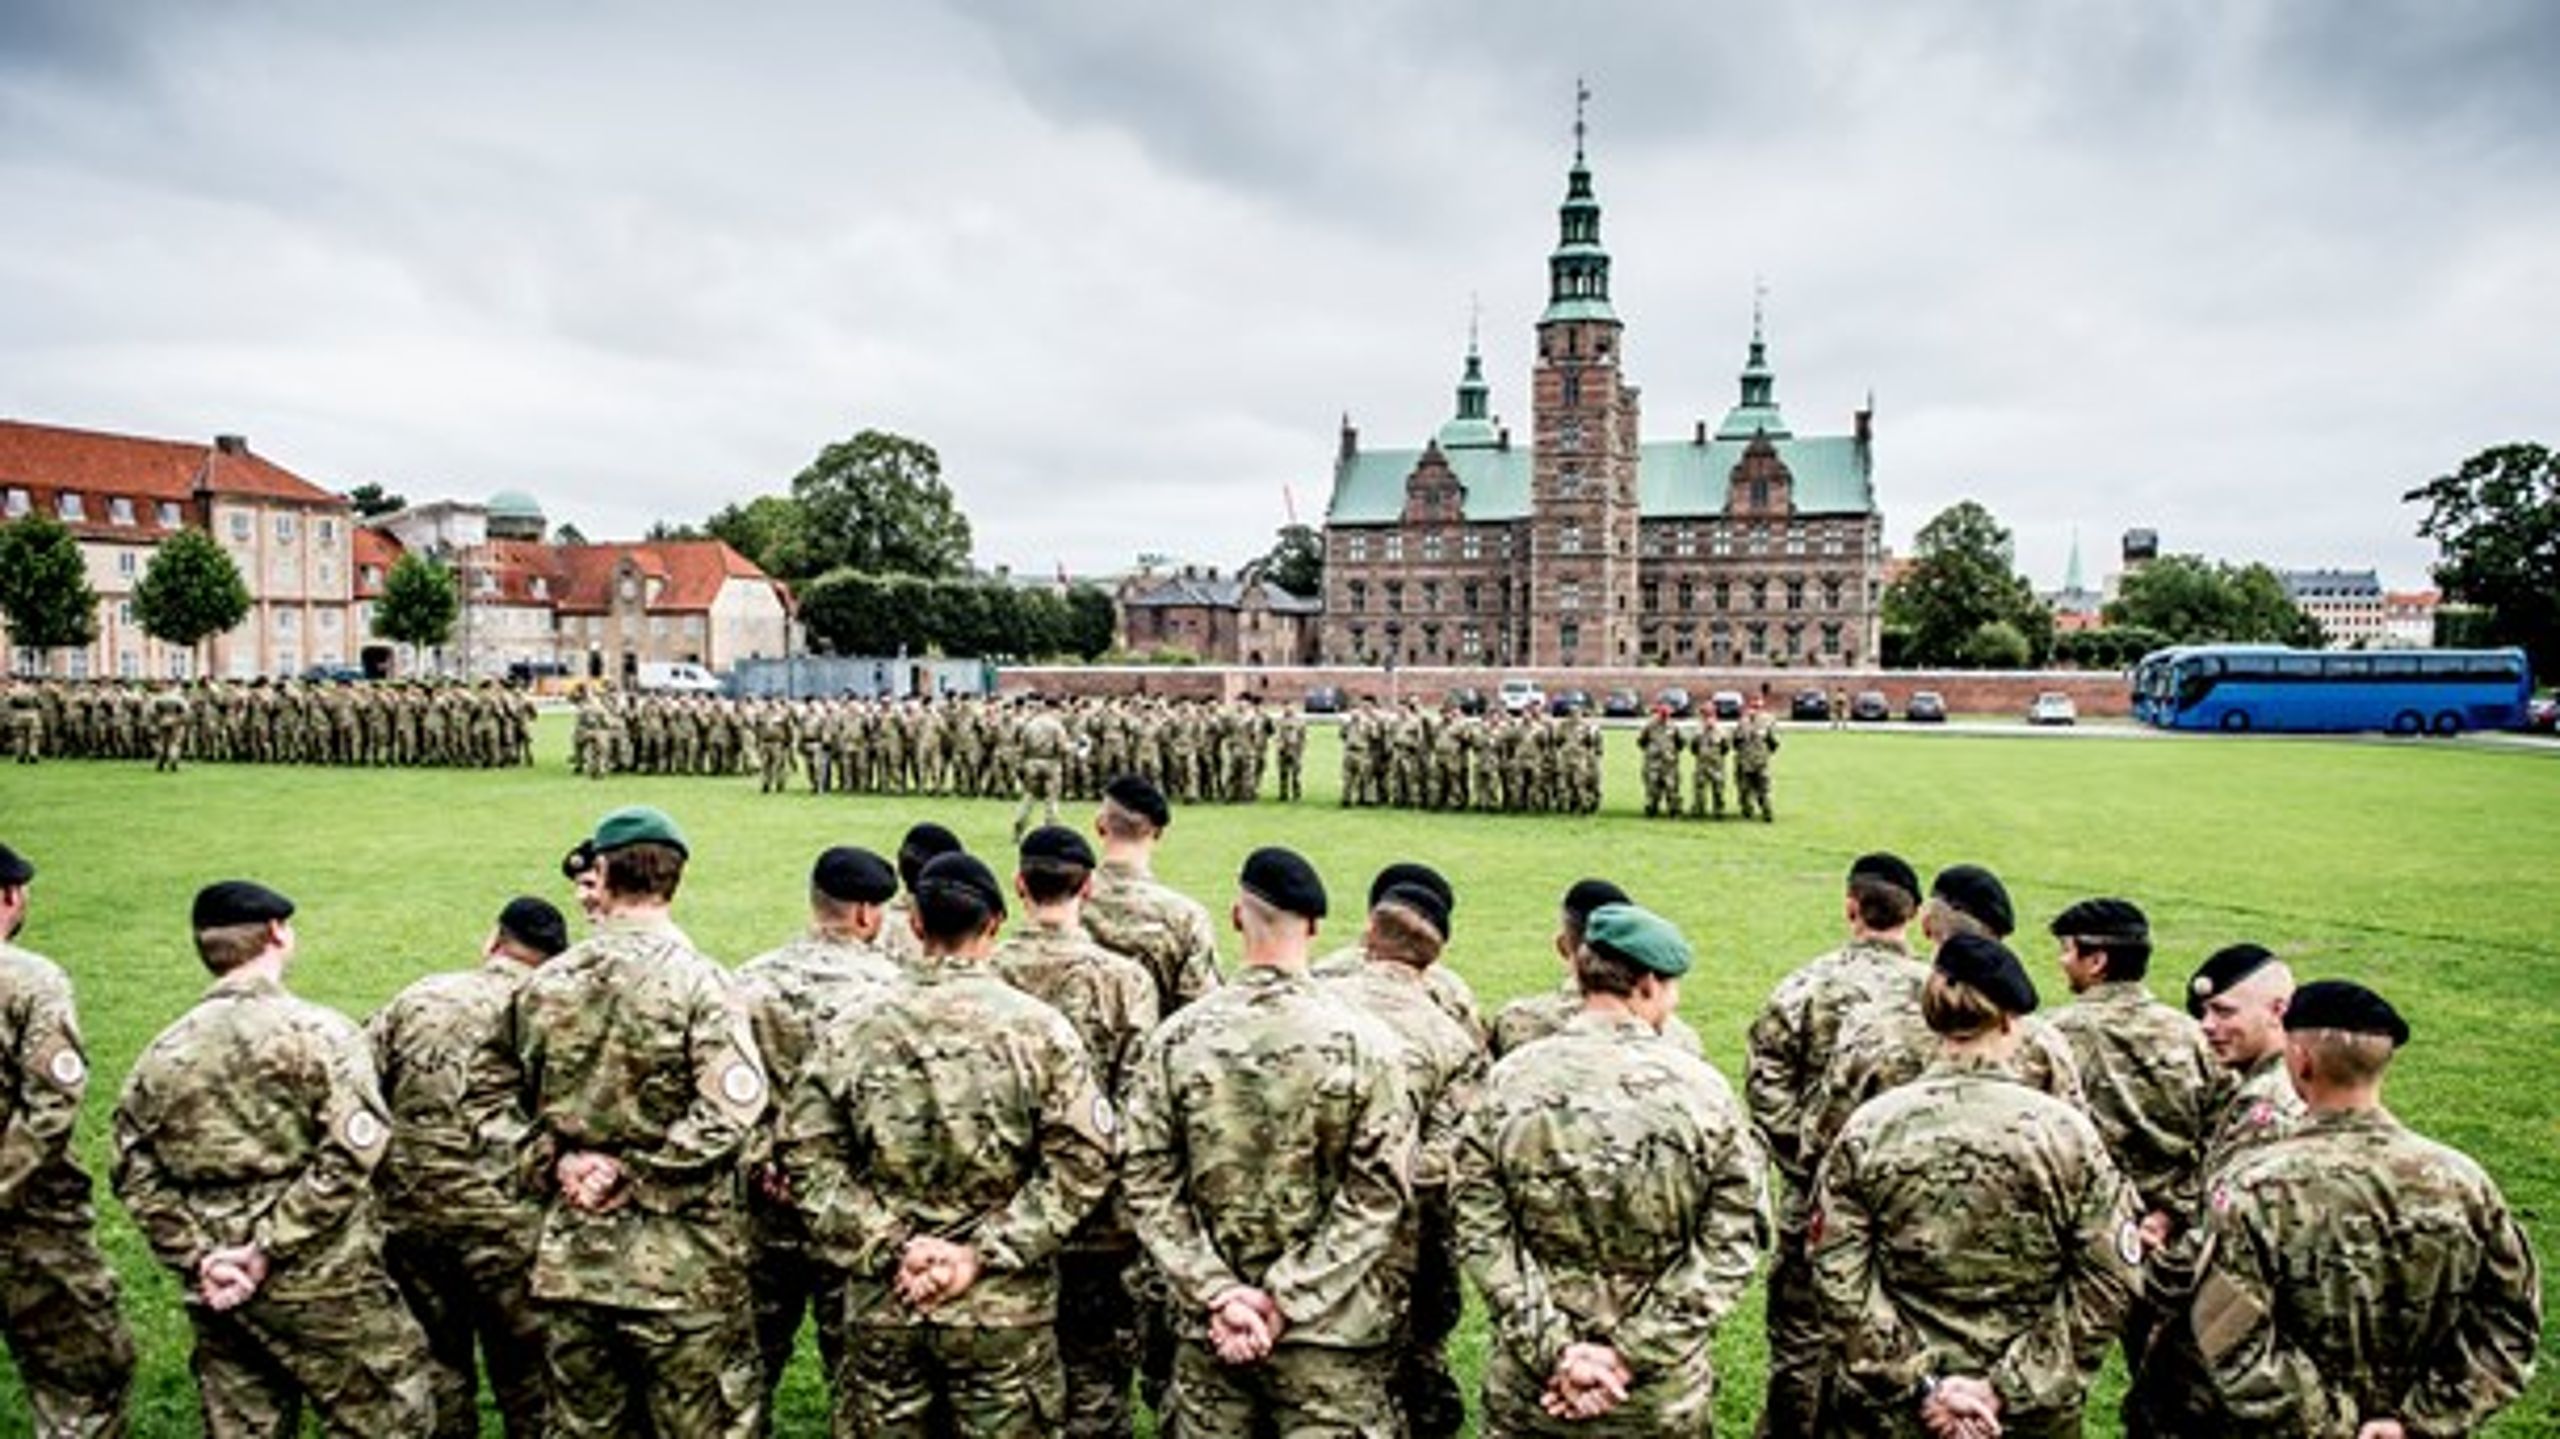 Forsvaret får 500 flere værnepligtige med det seneste forsvarsforlig, men hvad er deres rolle egentlig i det moderne danske samfund?